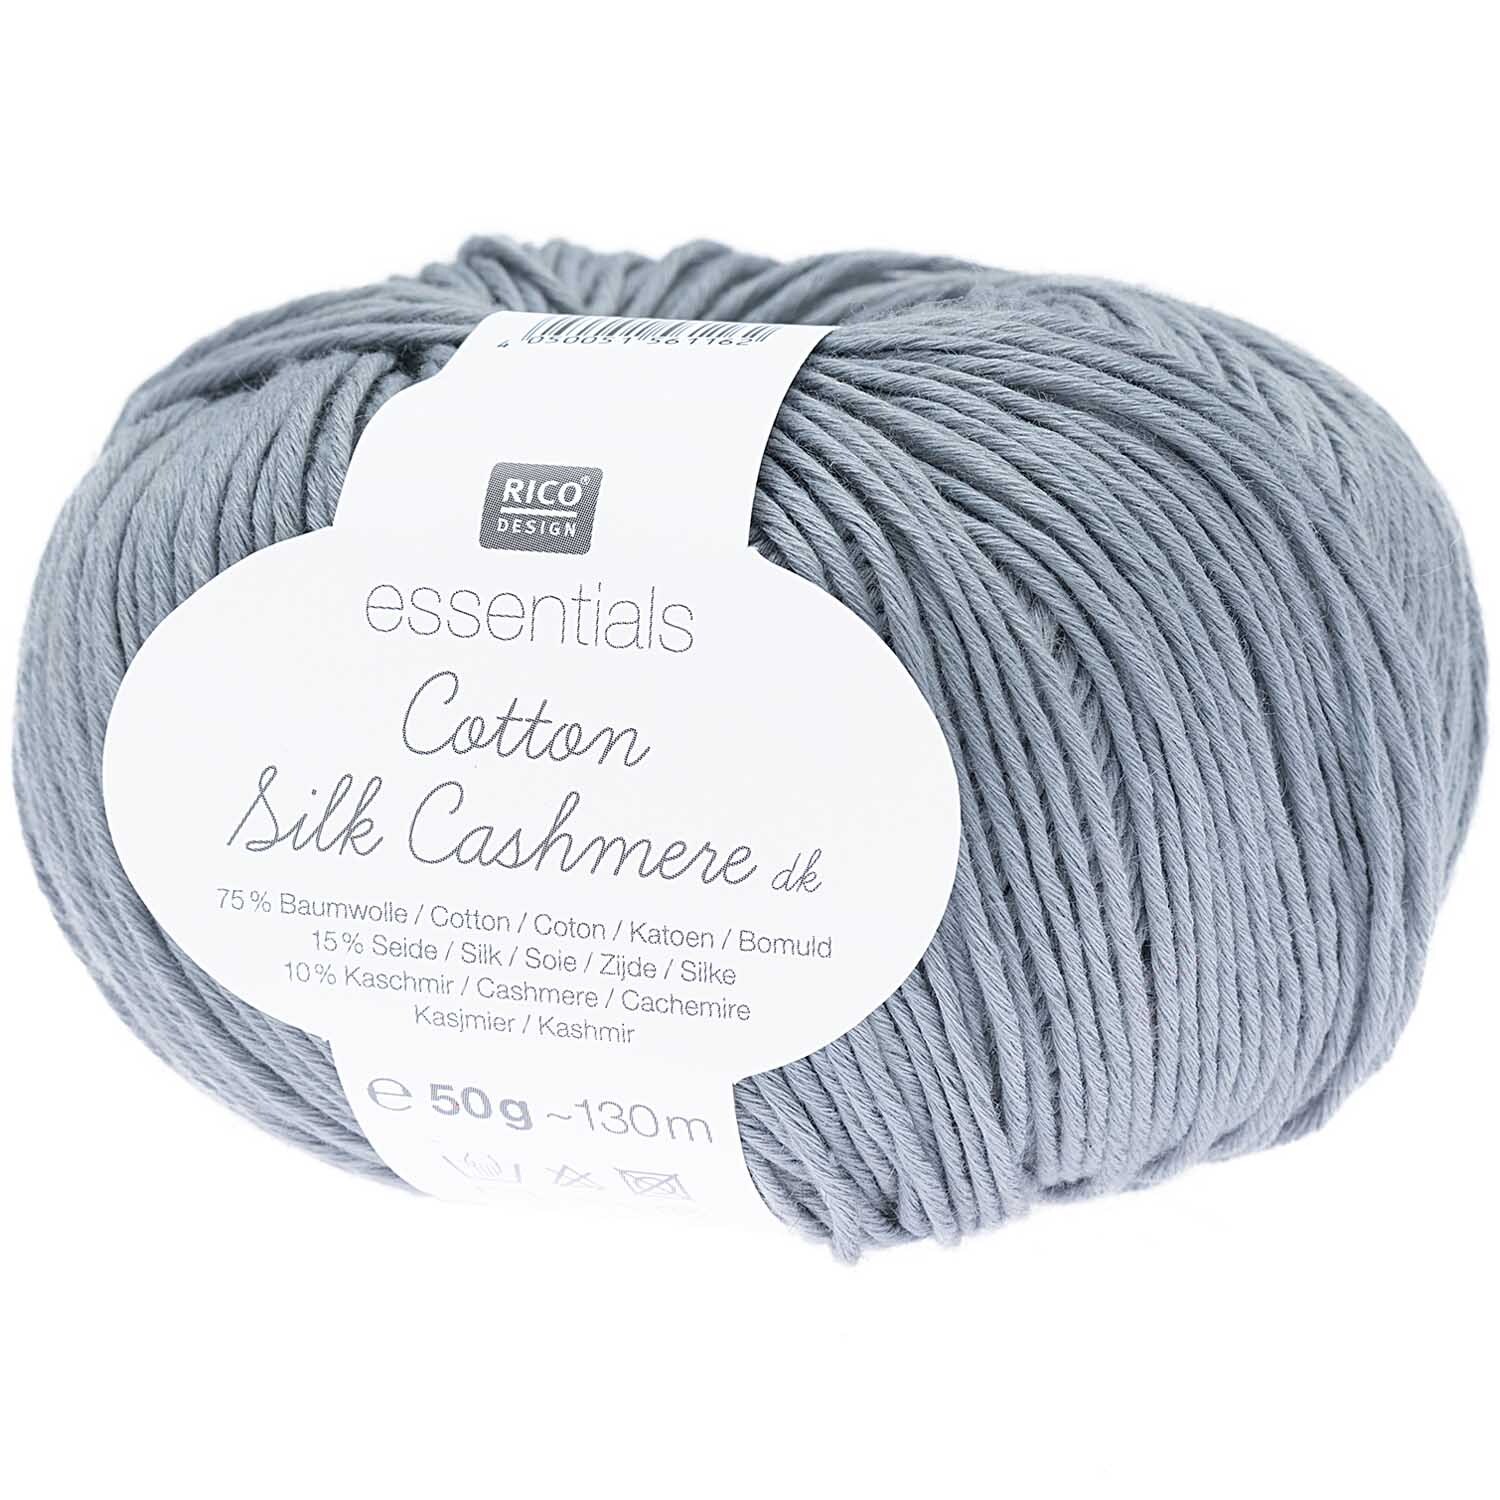 Essentials Cotton Silk Cashmere dk